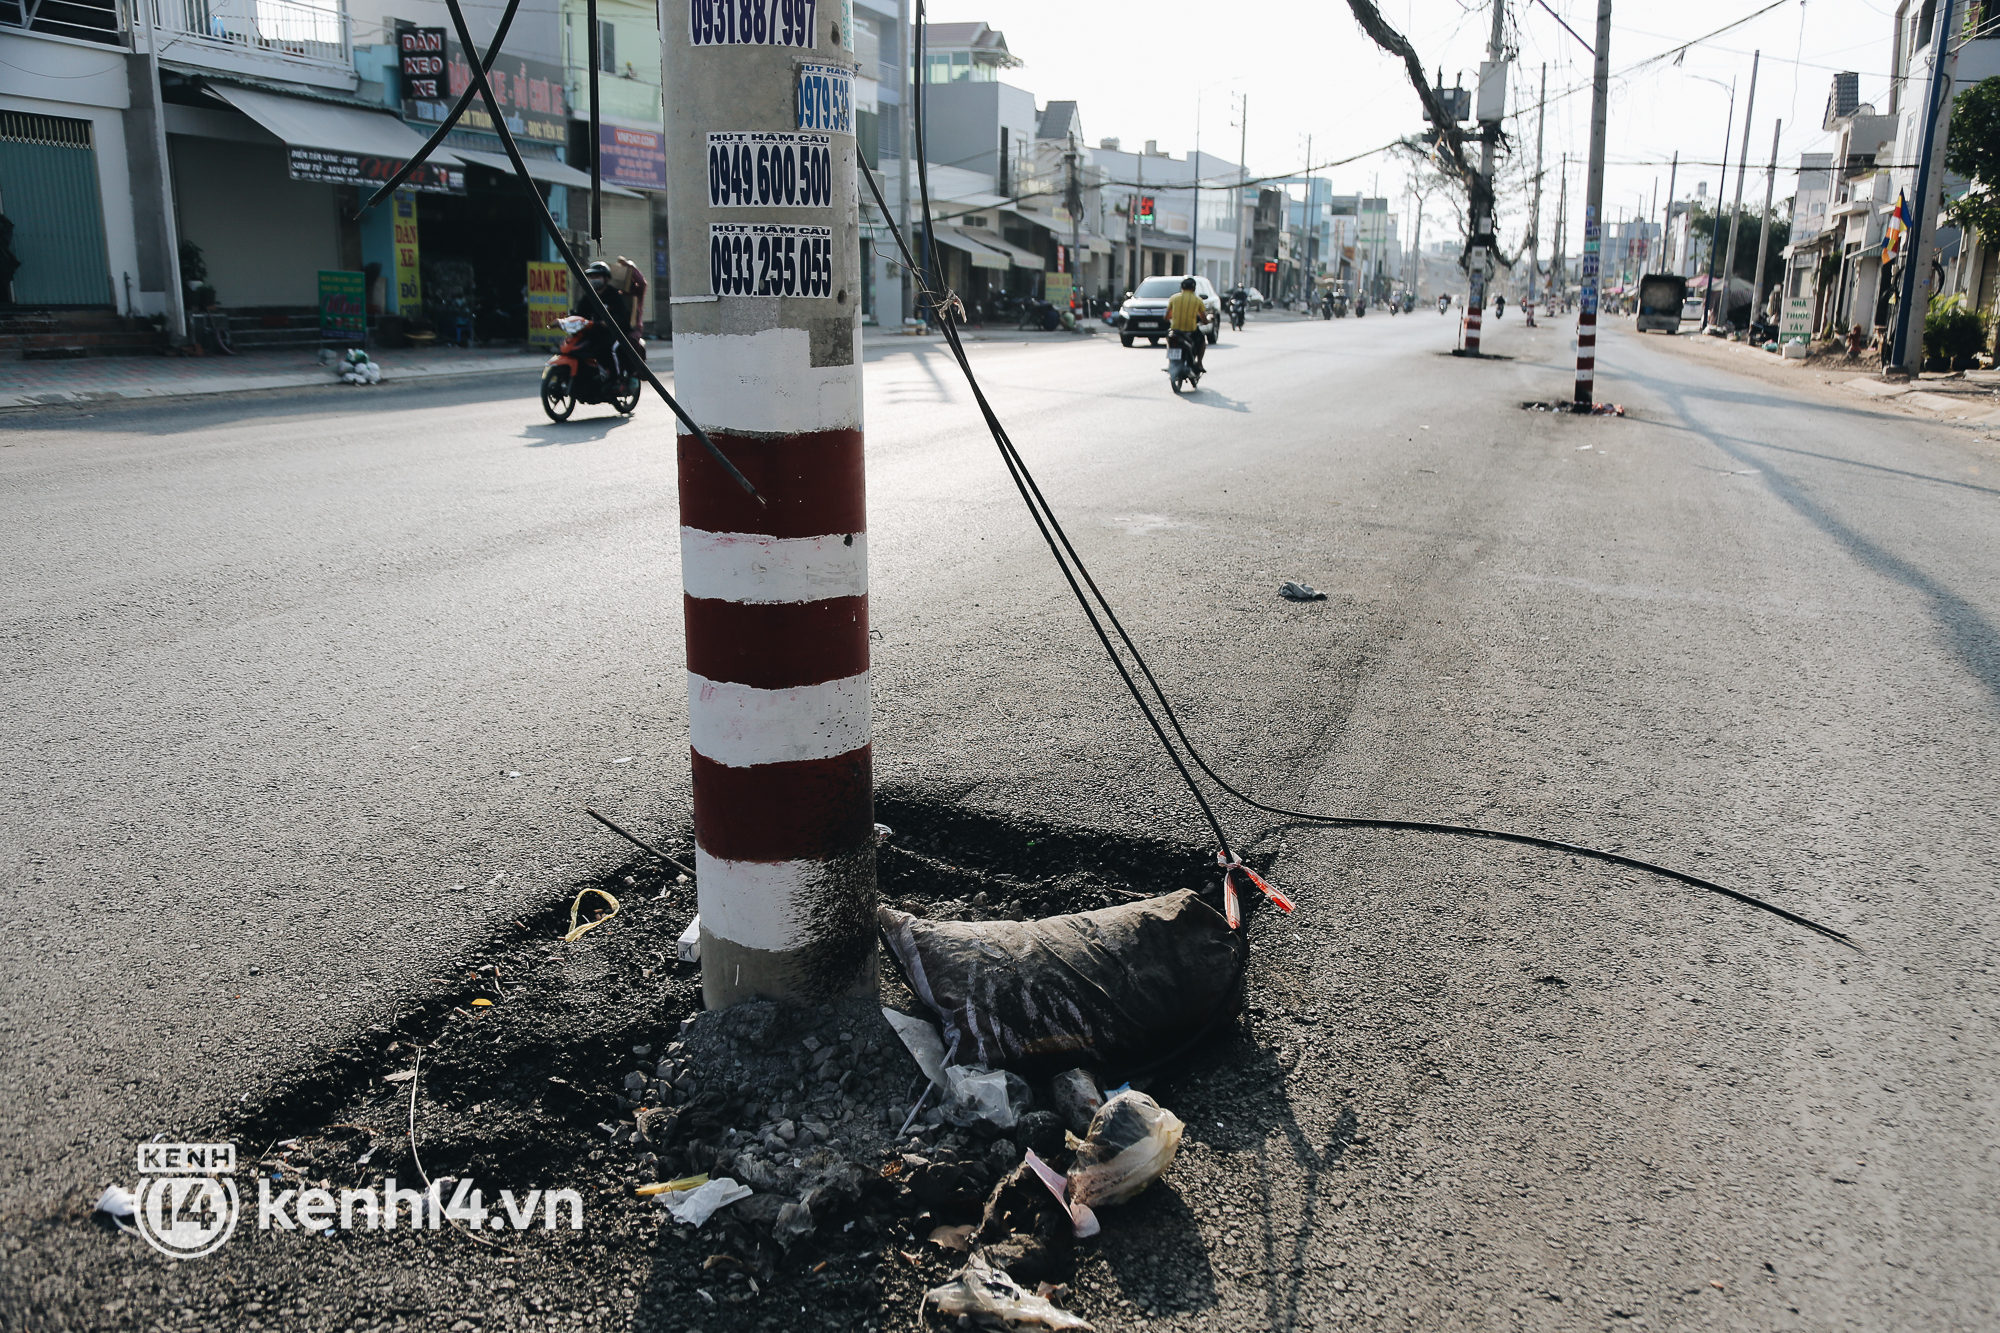 Hàng trăm cột điện bị bỏ quên giữa đường ở Sài Gòn, người dân nín thở luồn lách - Ảnh 14.